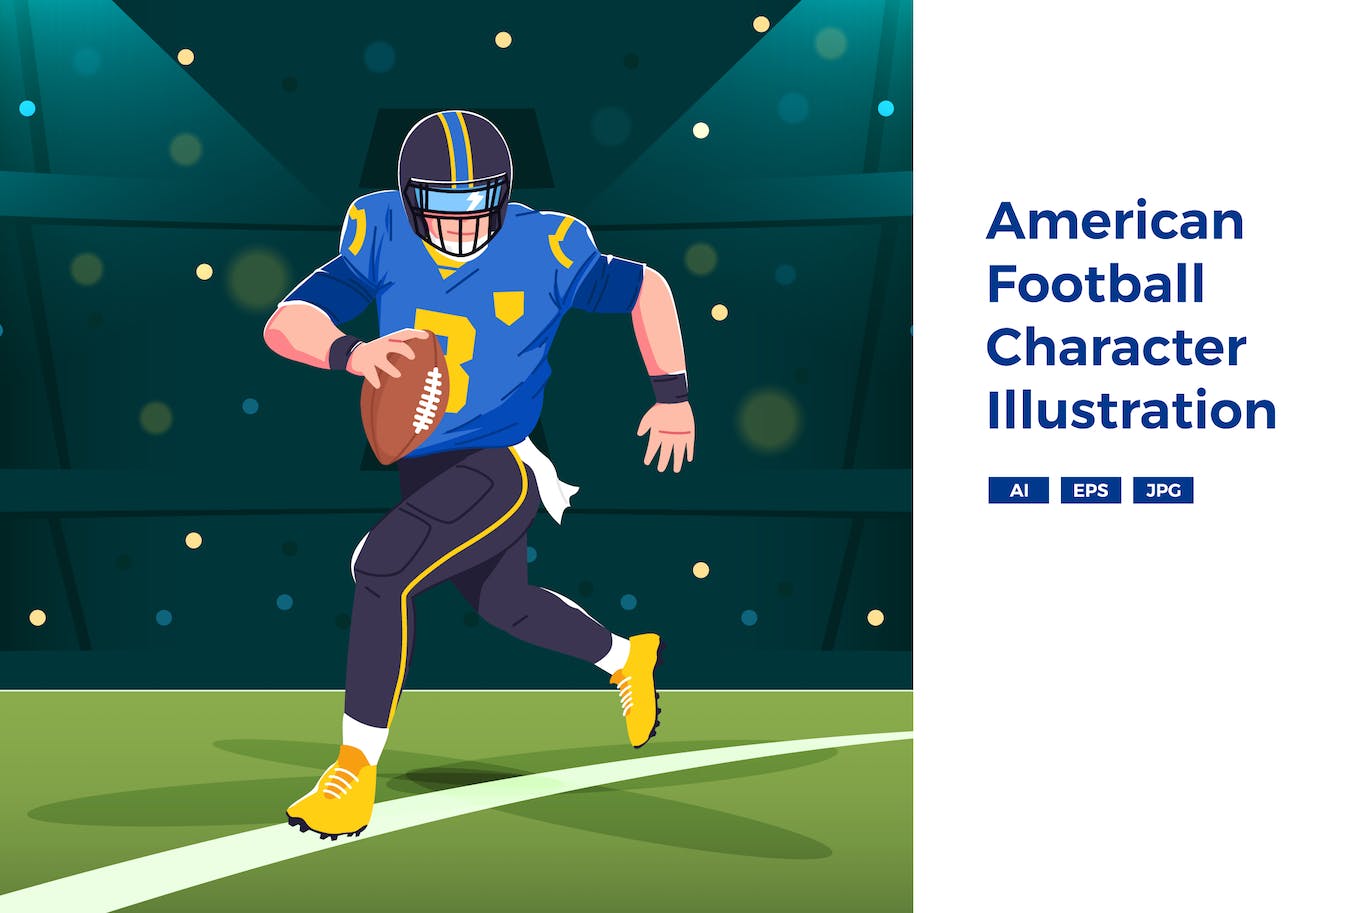 美式足球人物插画 American Football Character Illustration 图片素材 第1张